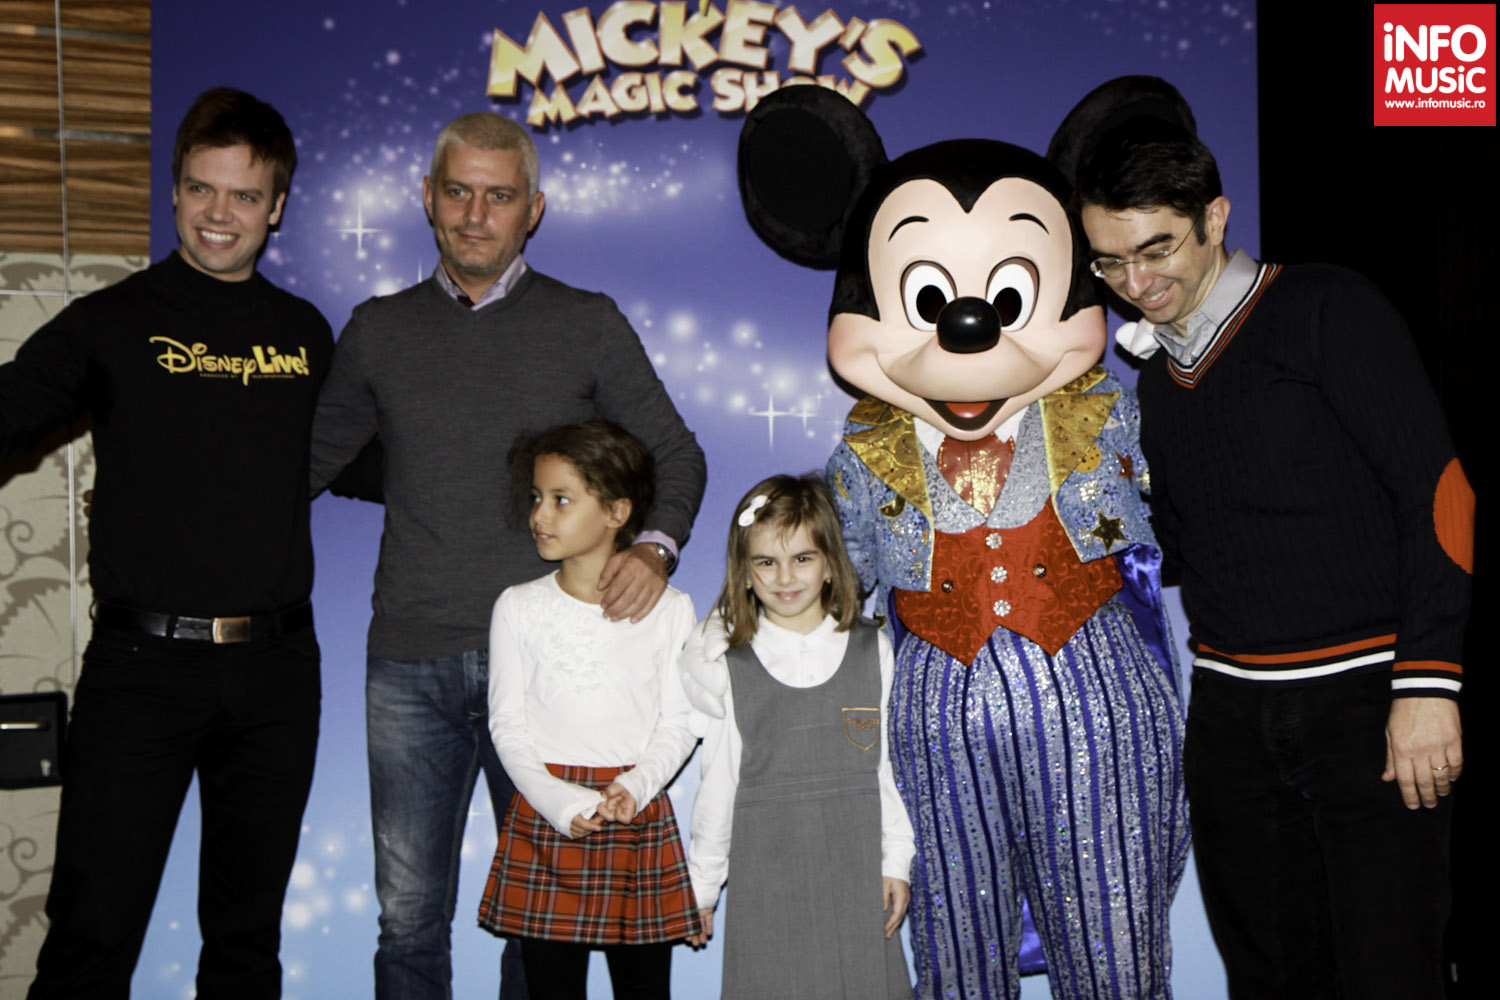 Virgil Iantu și Mihai Găinușă alături de magicianul Michael Barron și Mickey Mouse